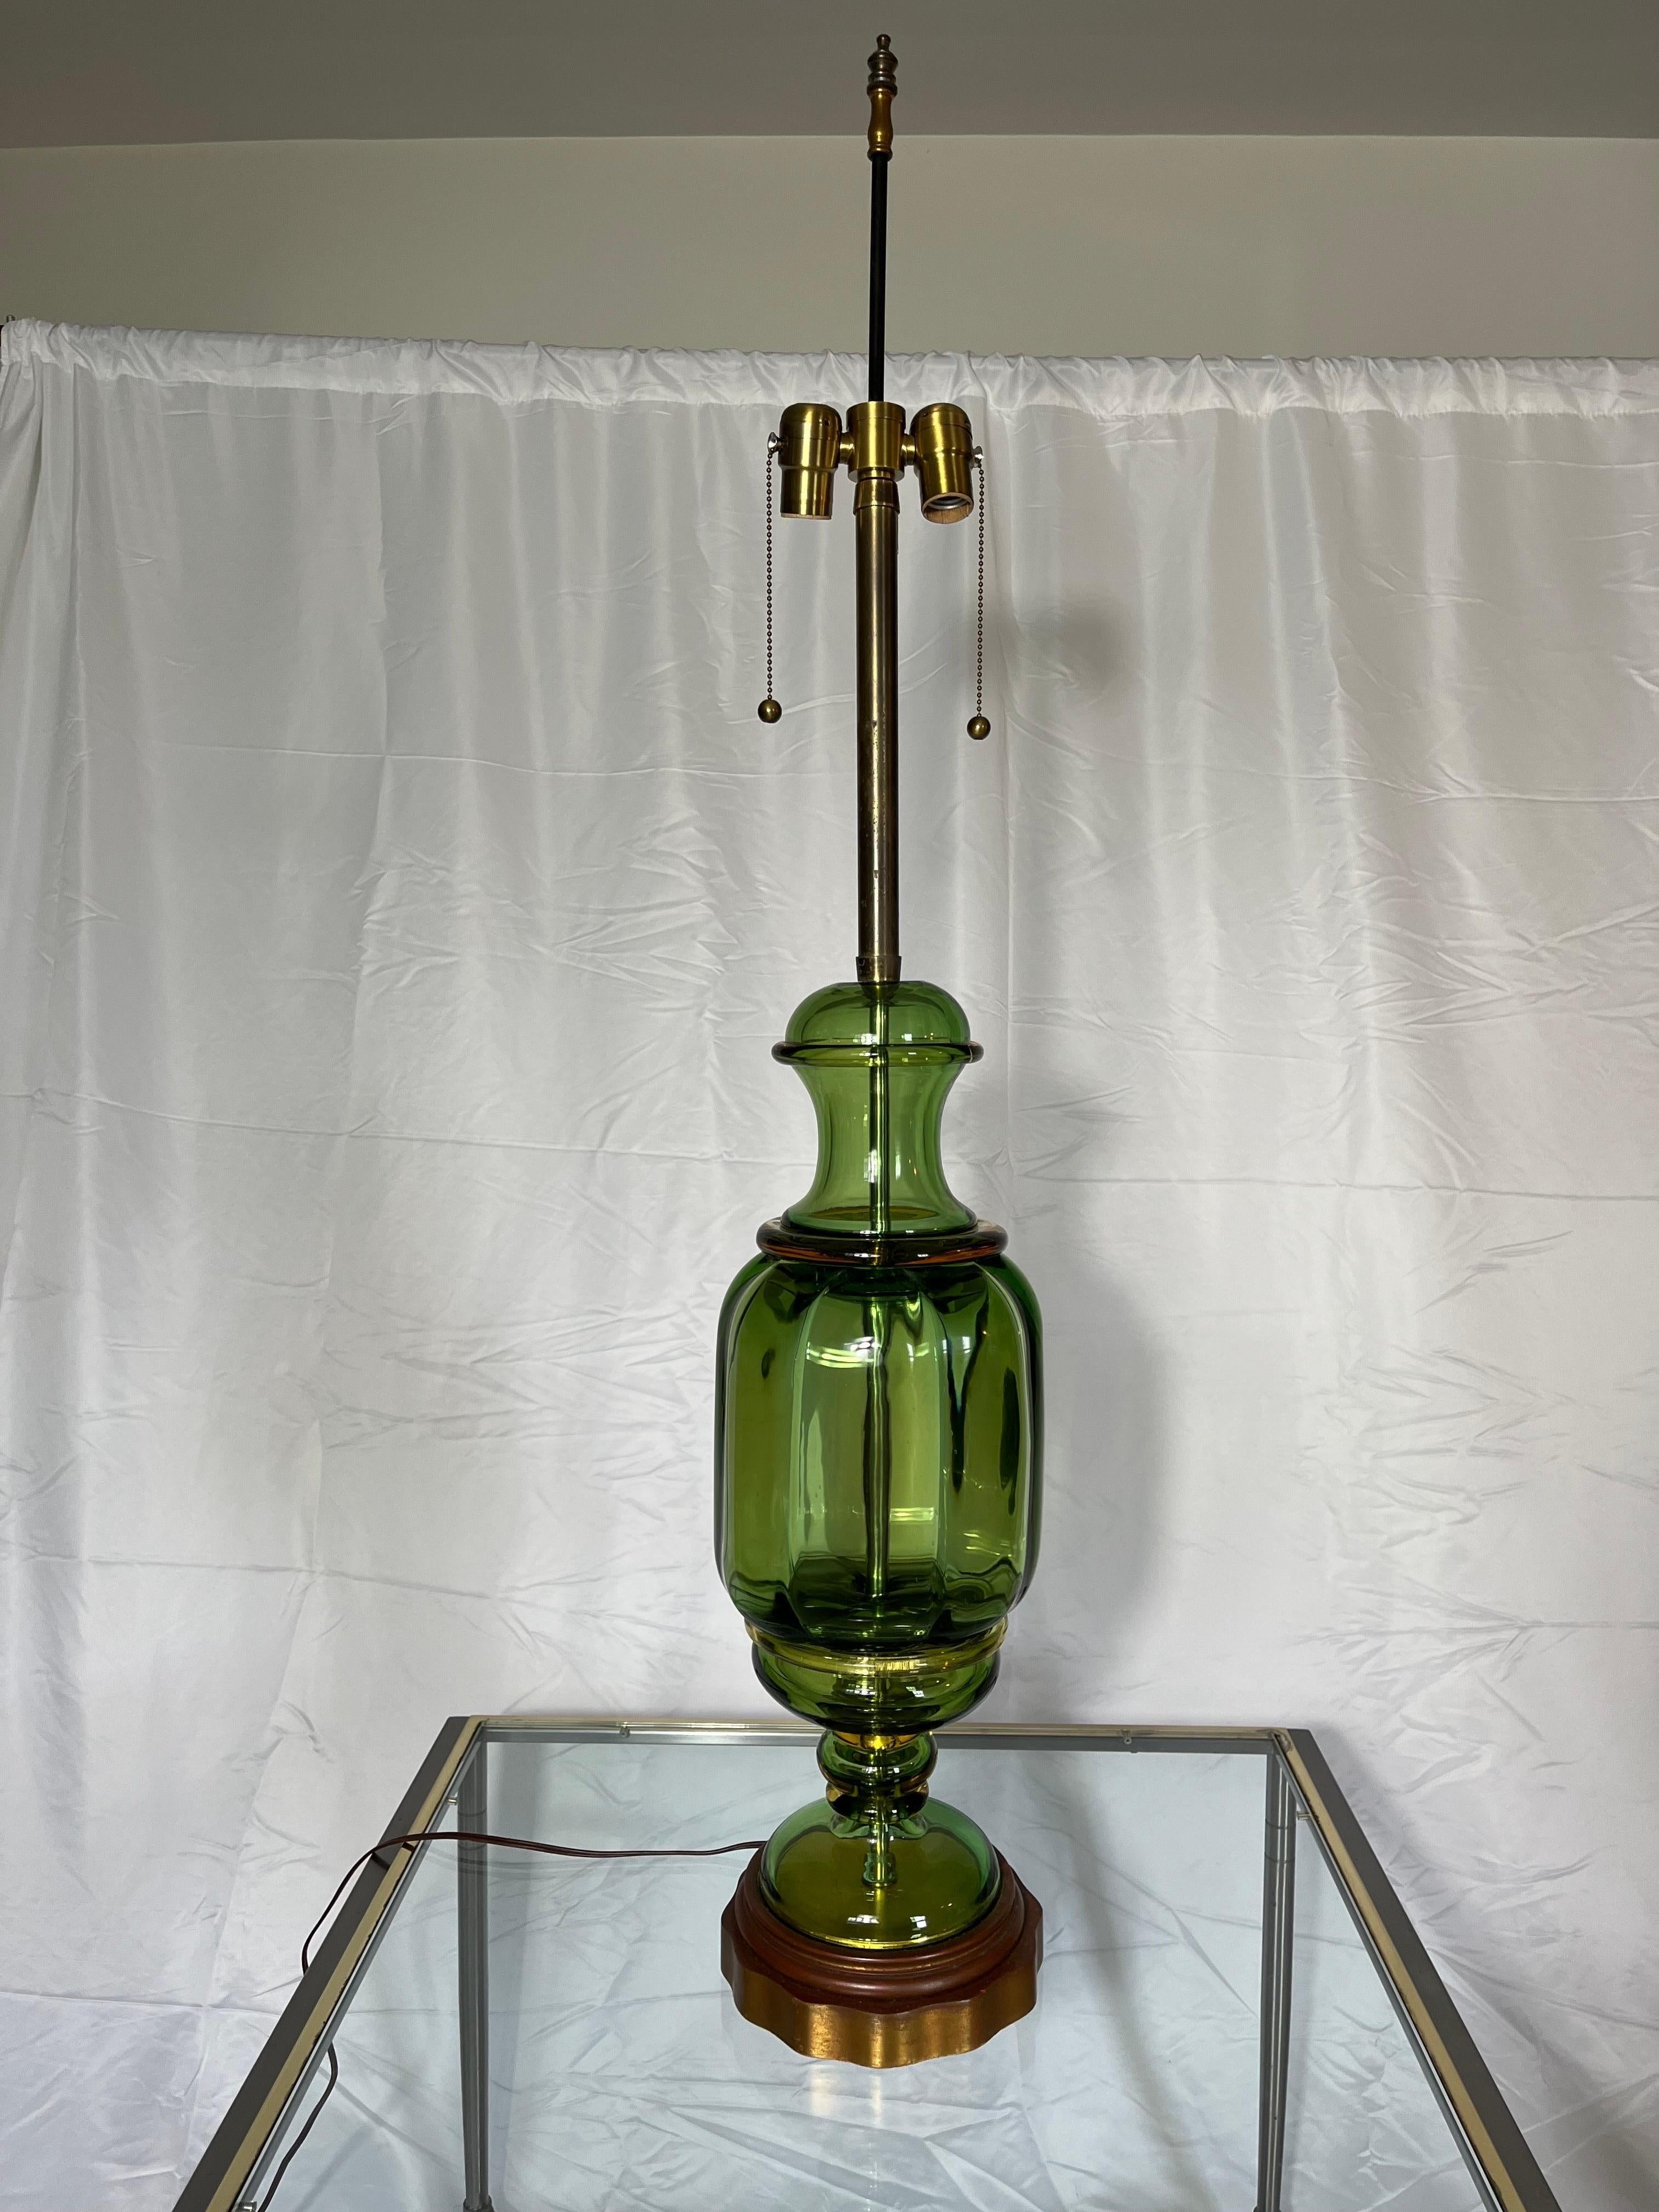 Lampe de table italienne datant des années 1950, réalisée par Seguso pour The Table Company, avec une double douille sur un corps en verre de Murano vert clair. La lampe est en excellent état, entièrement restaurée avec un nouveau câblage et un